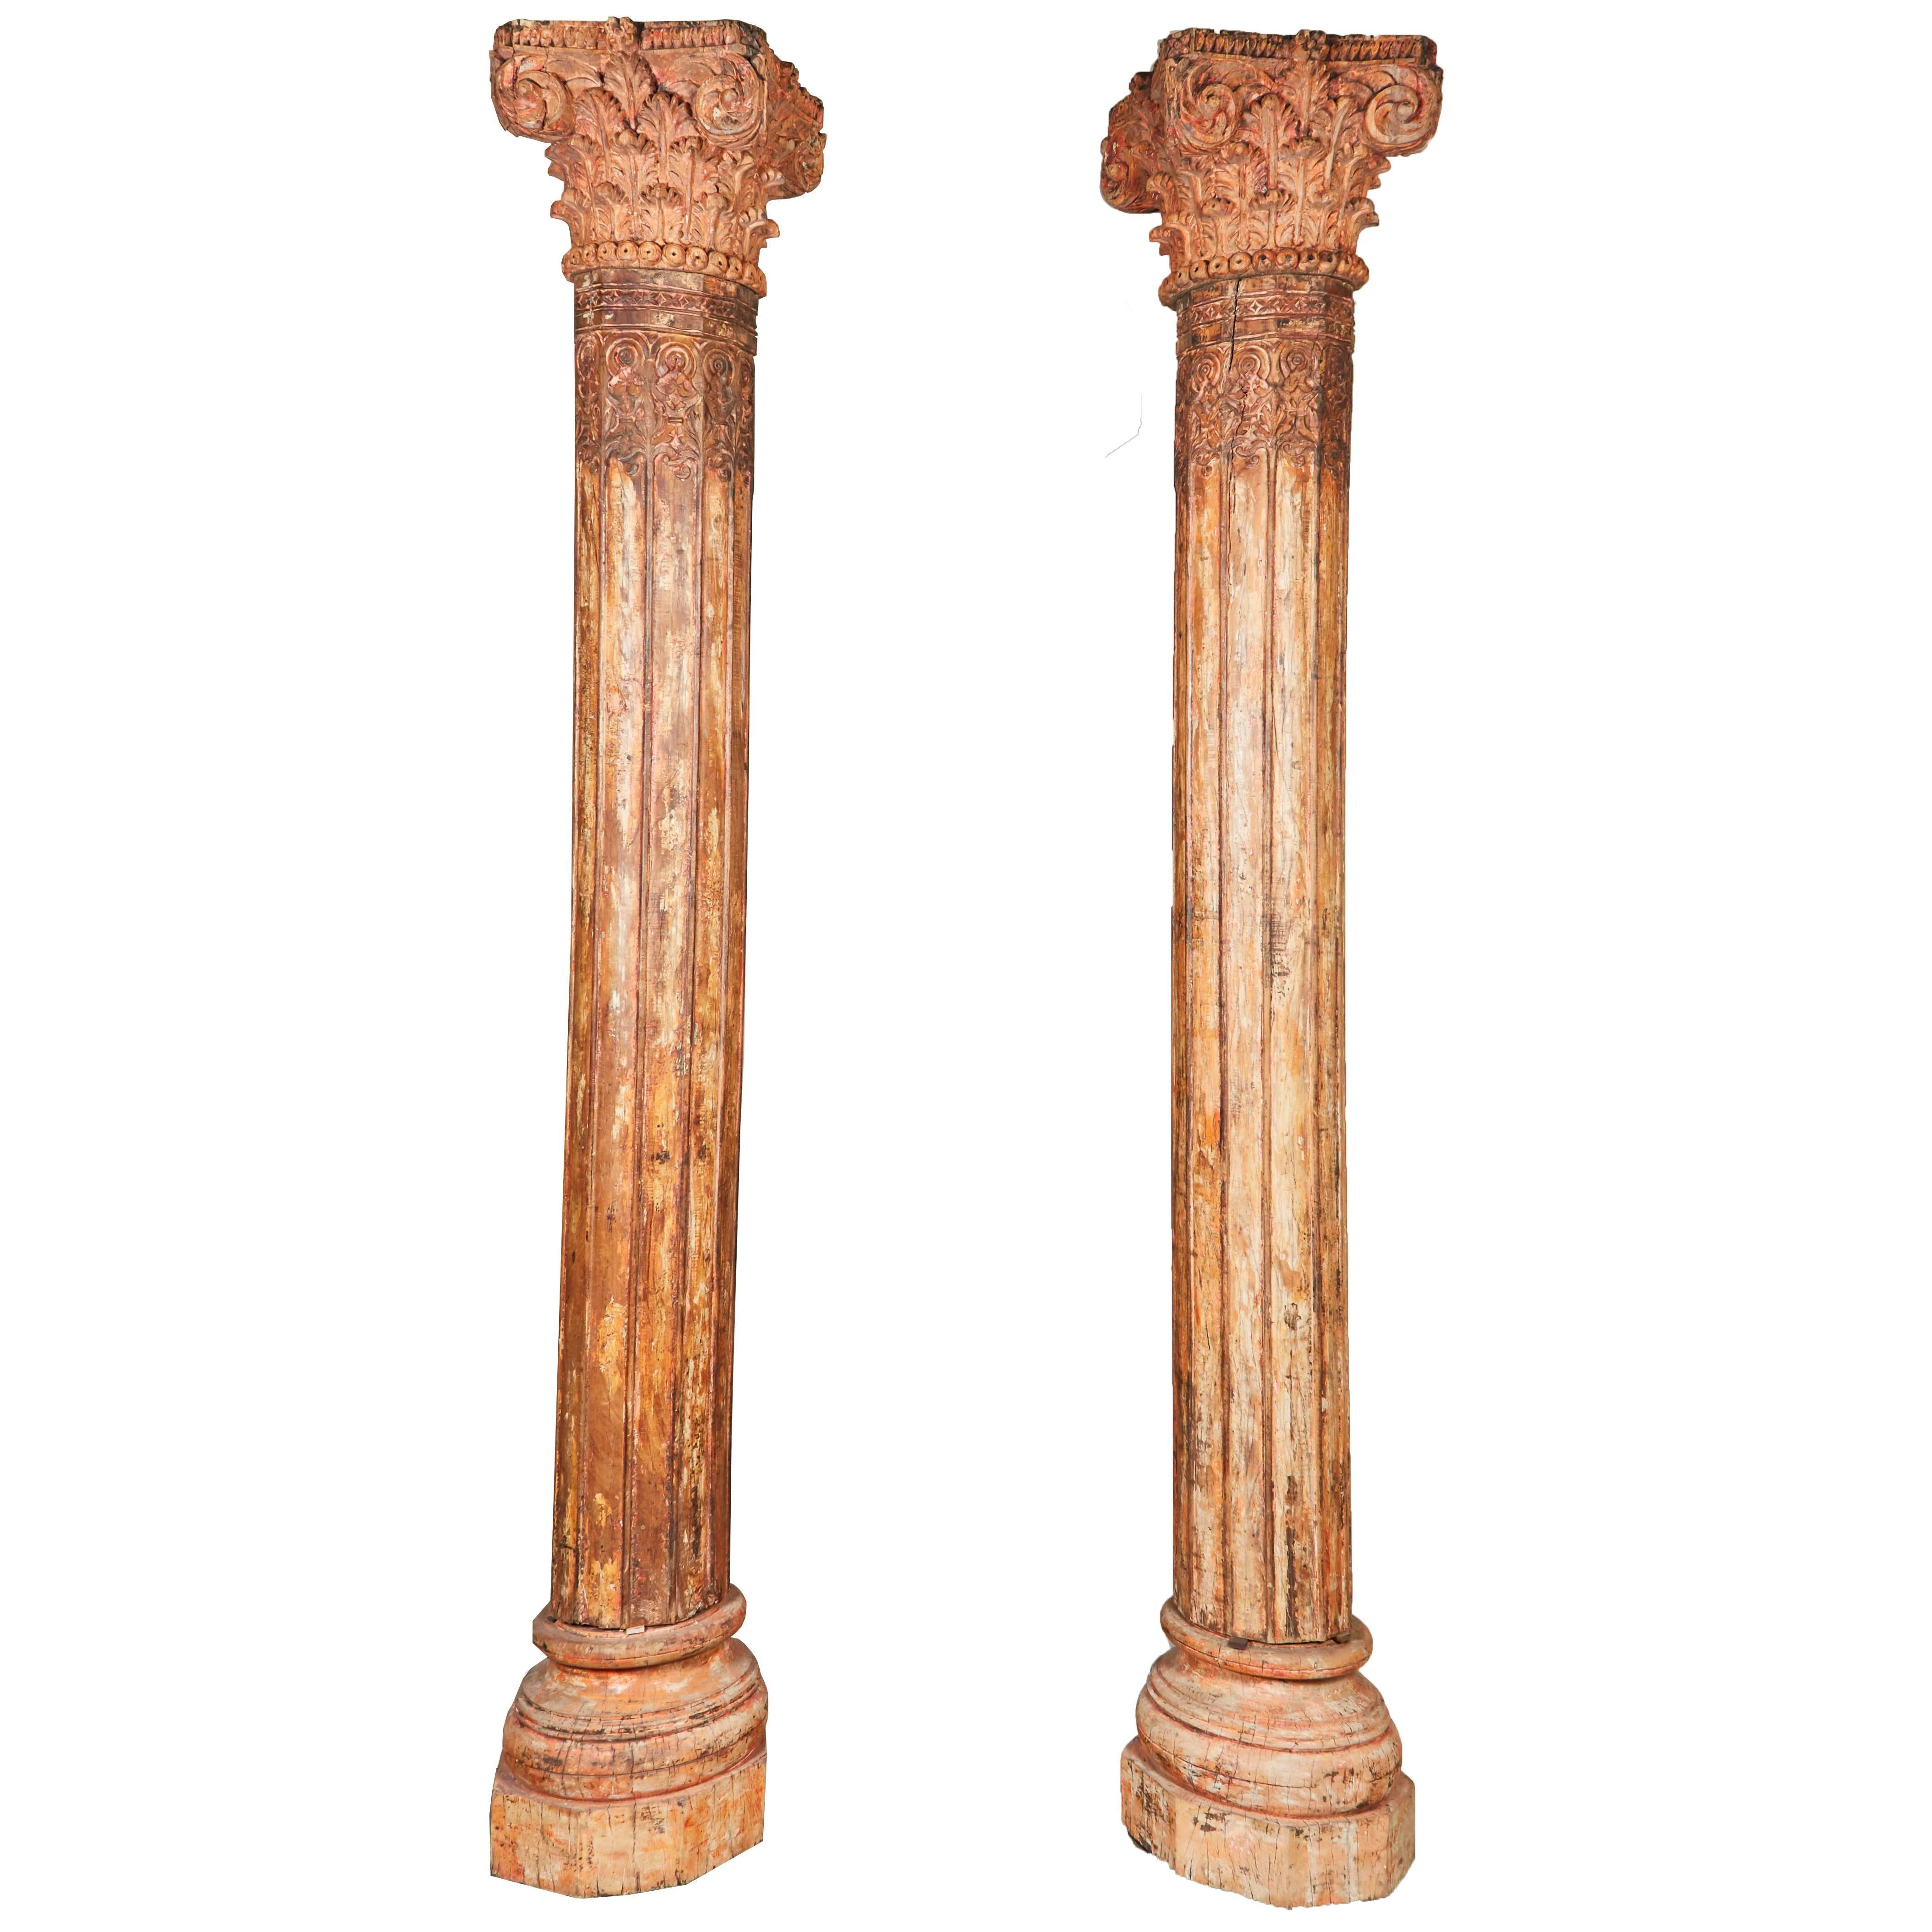 Paar orangefarbene hohe indische Teakholz-Säulen aus dem 18. Jahrhundert